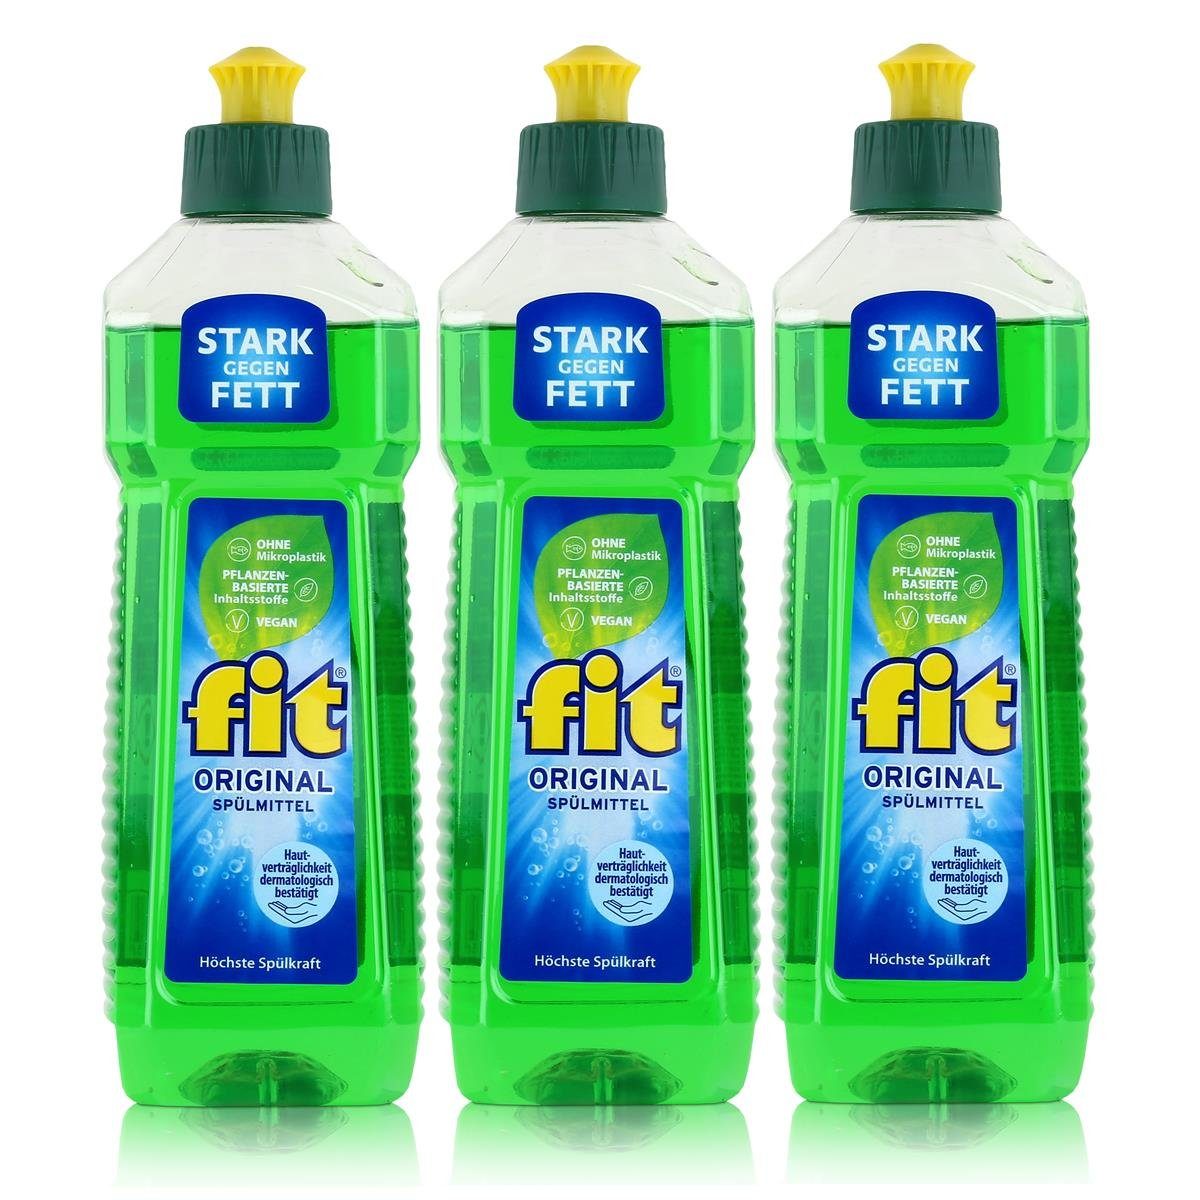 FIT fit Original Spülmittel 500ml - Stark gegen Fett (3er Pack) Geschirrspülmittel